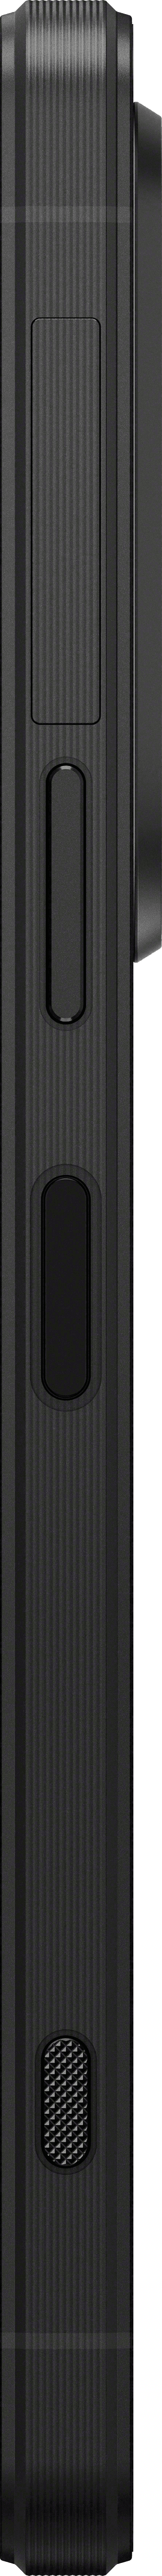 Xperia 1 VI - black - side left